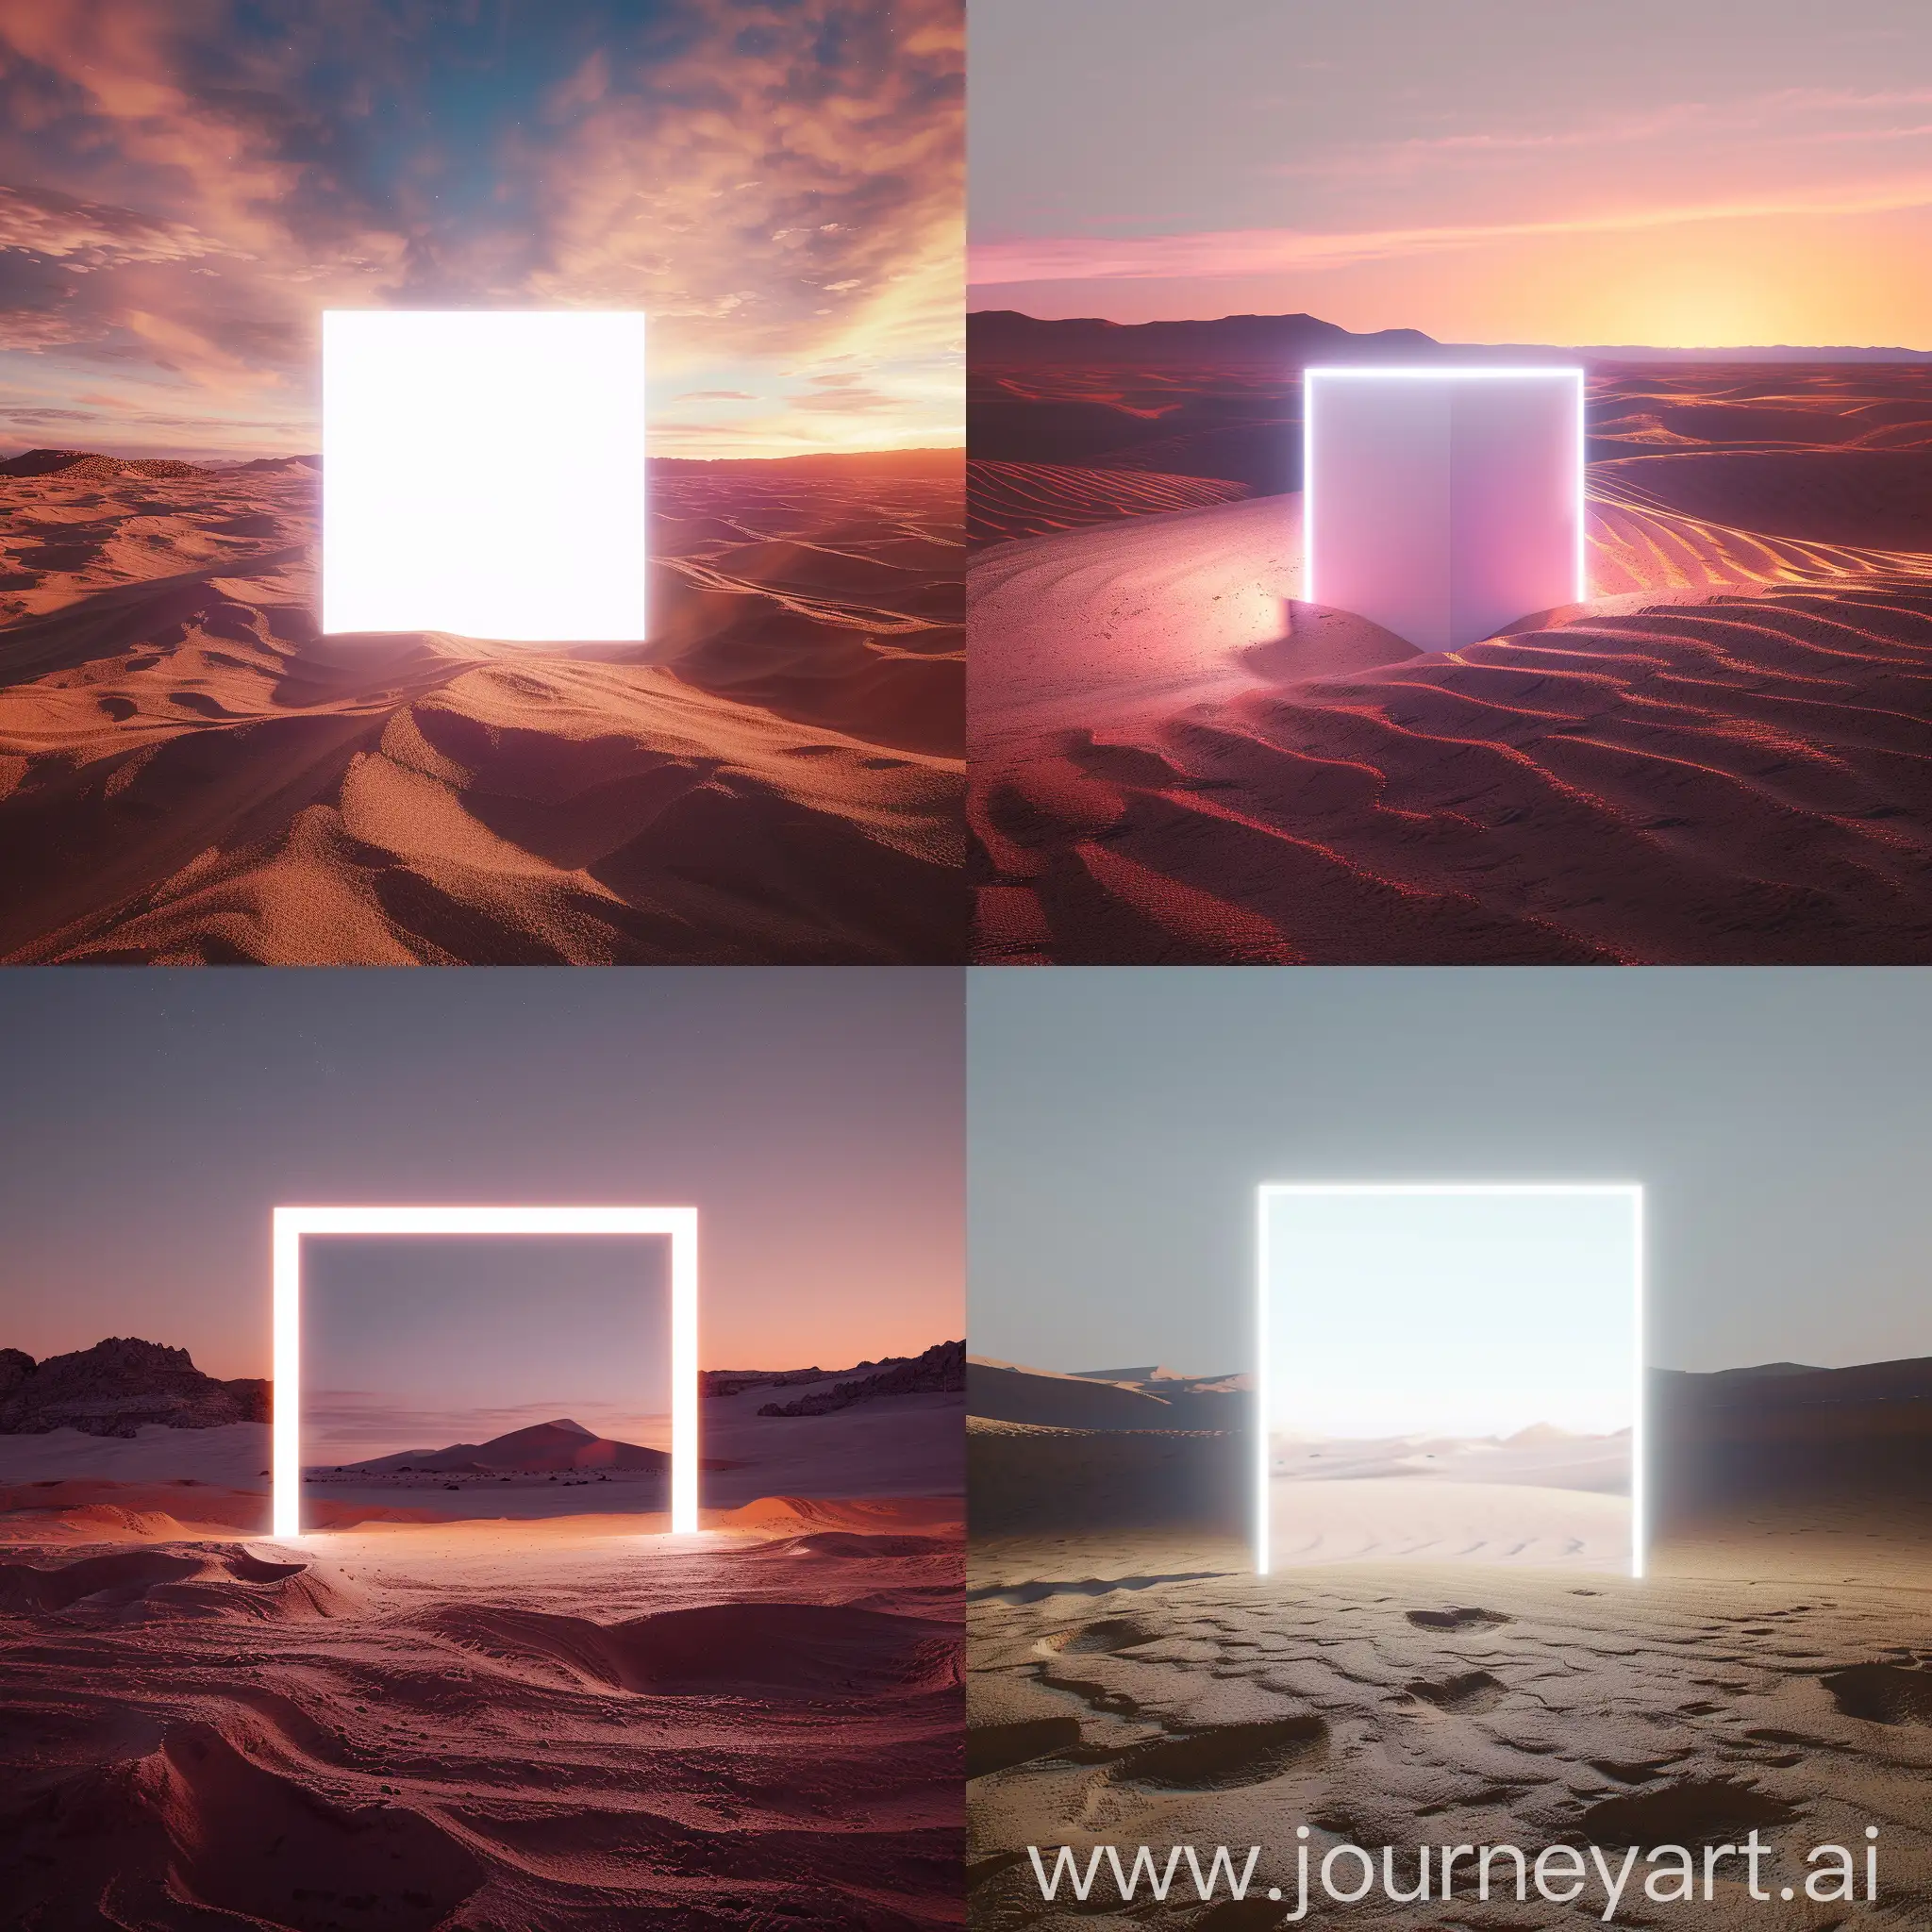 Desert, realistic, 4k, neon white block in center